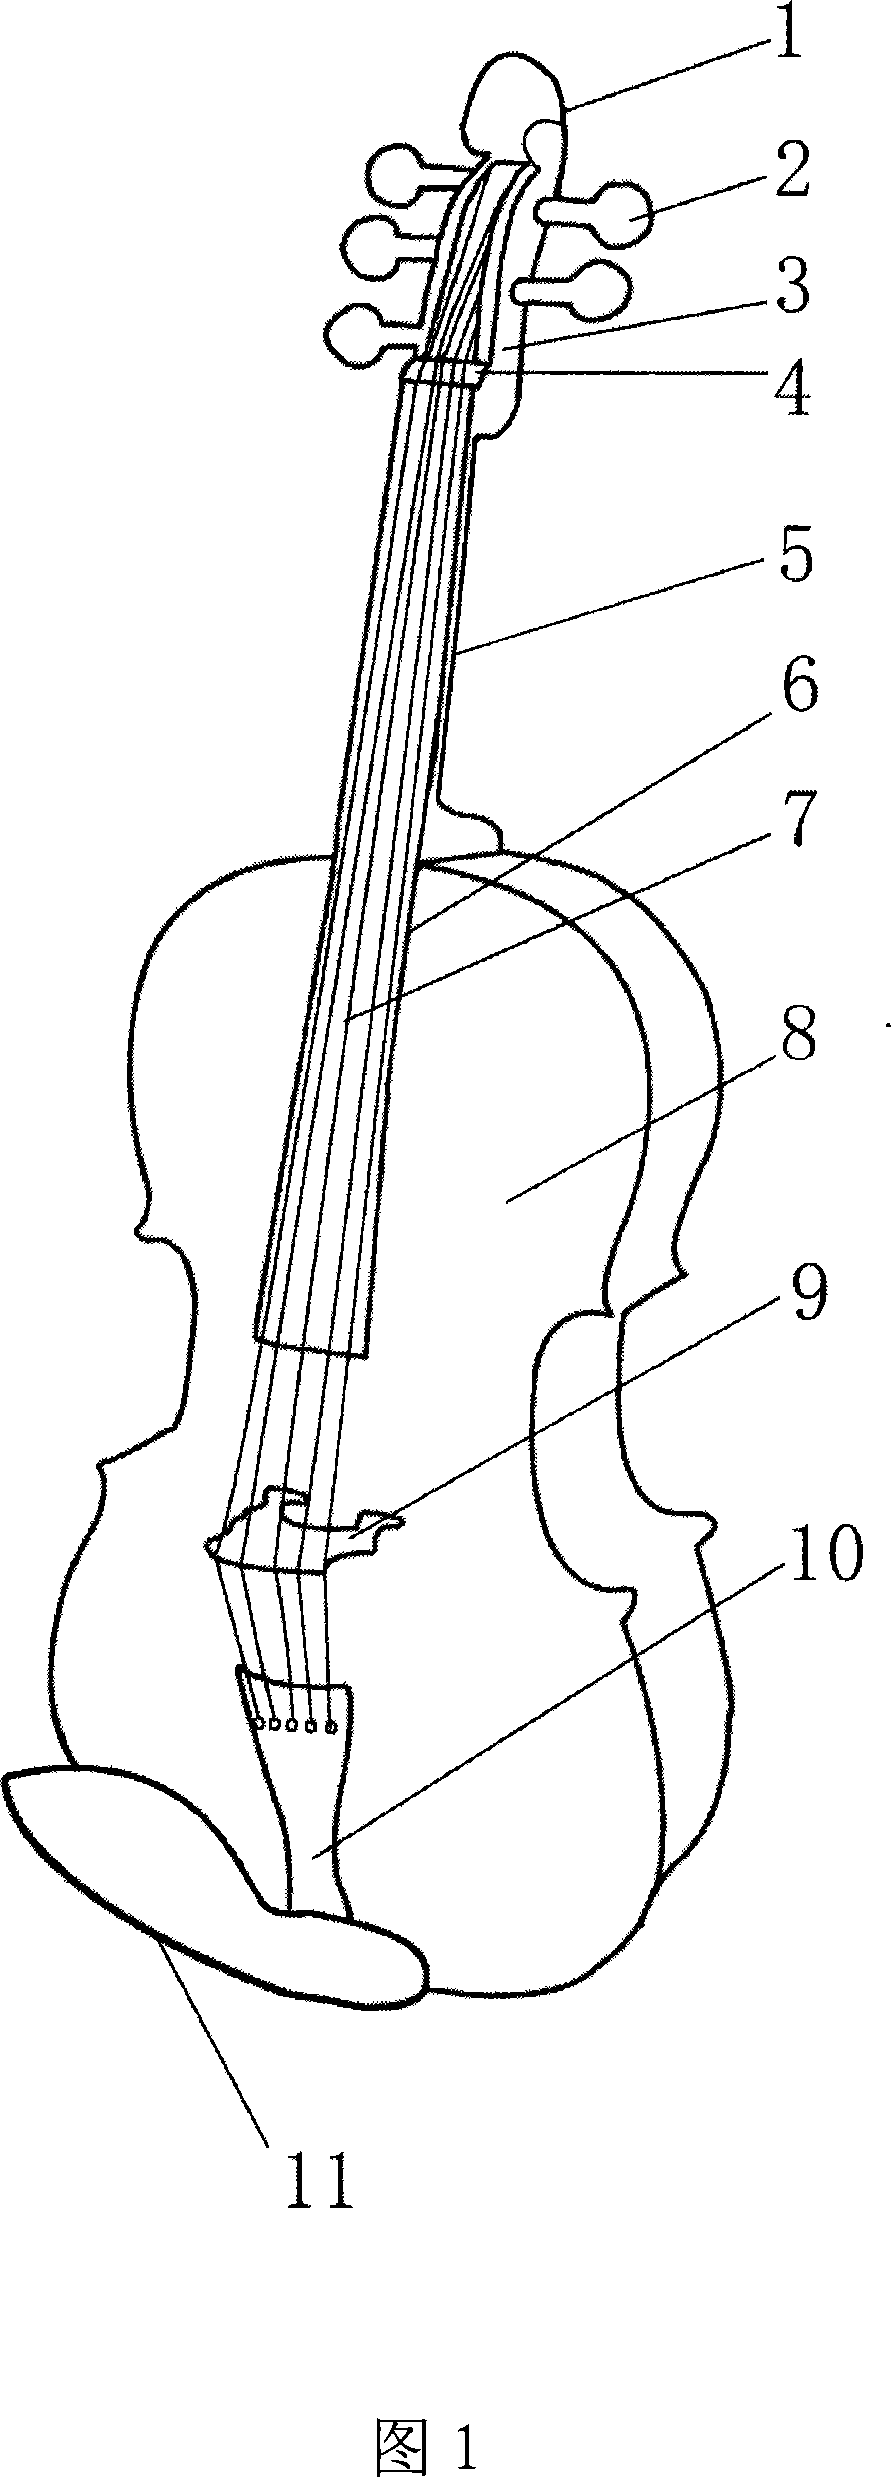 Five string violin